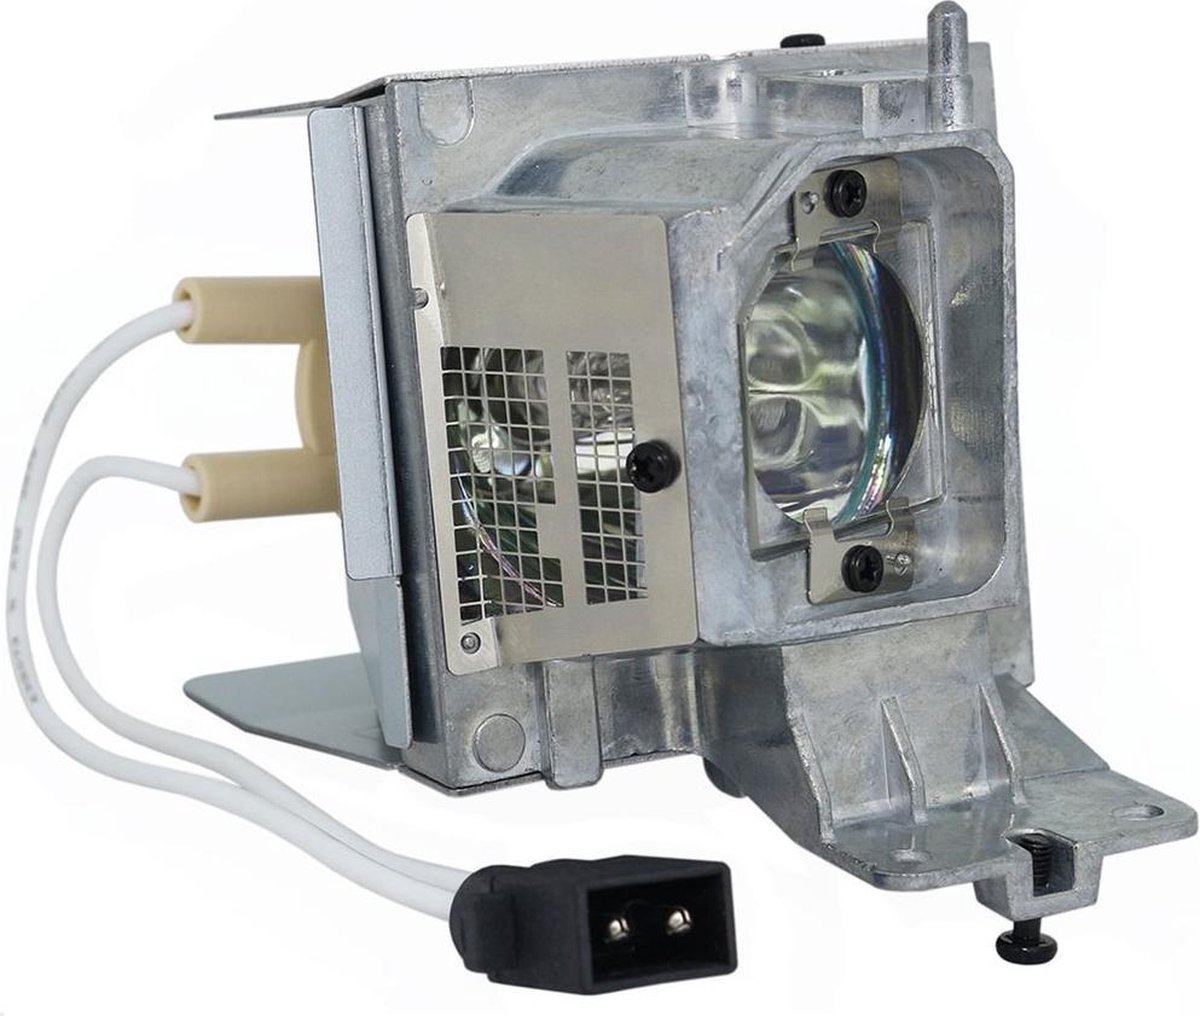 Beamerlamp geschikt voor de ACER P1287 beamer, lamp code MC.JLC11.001. Bevat originele UHP lamp, prestaties gelijk aan origineel.